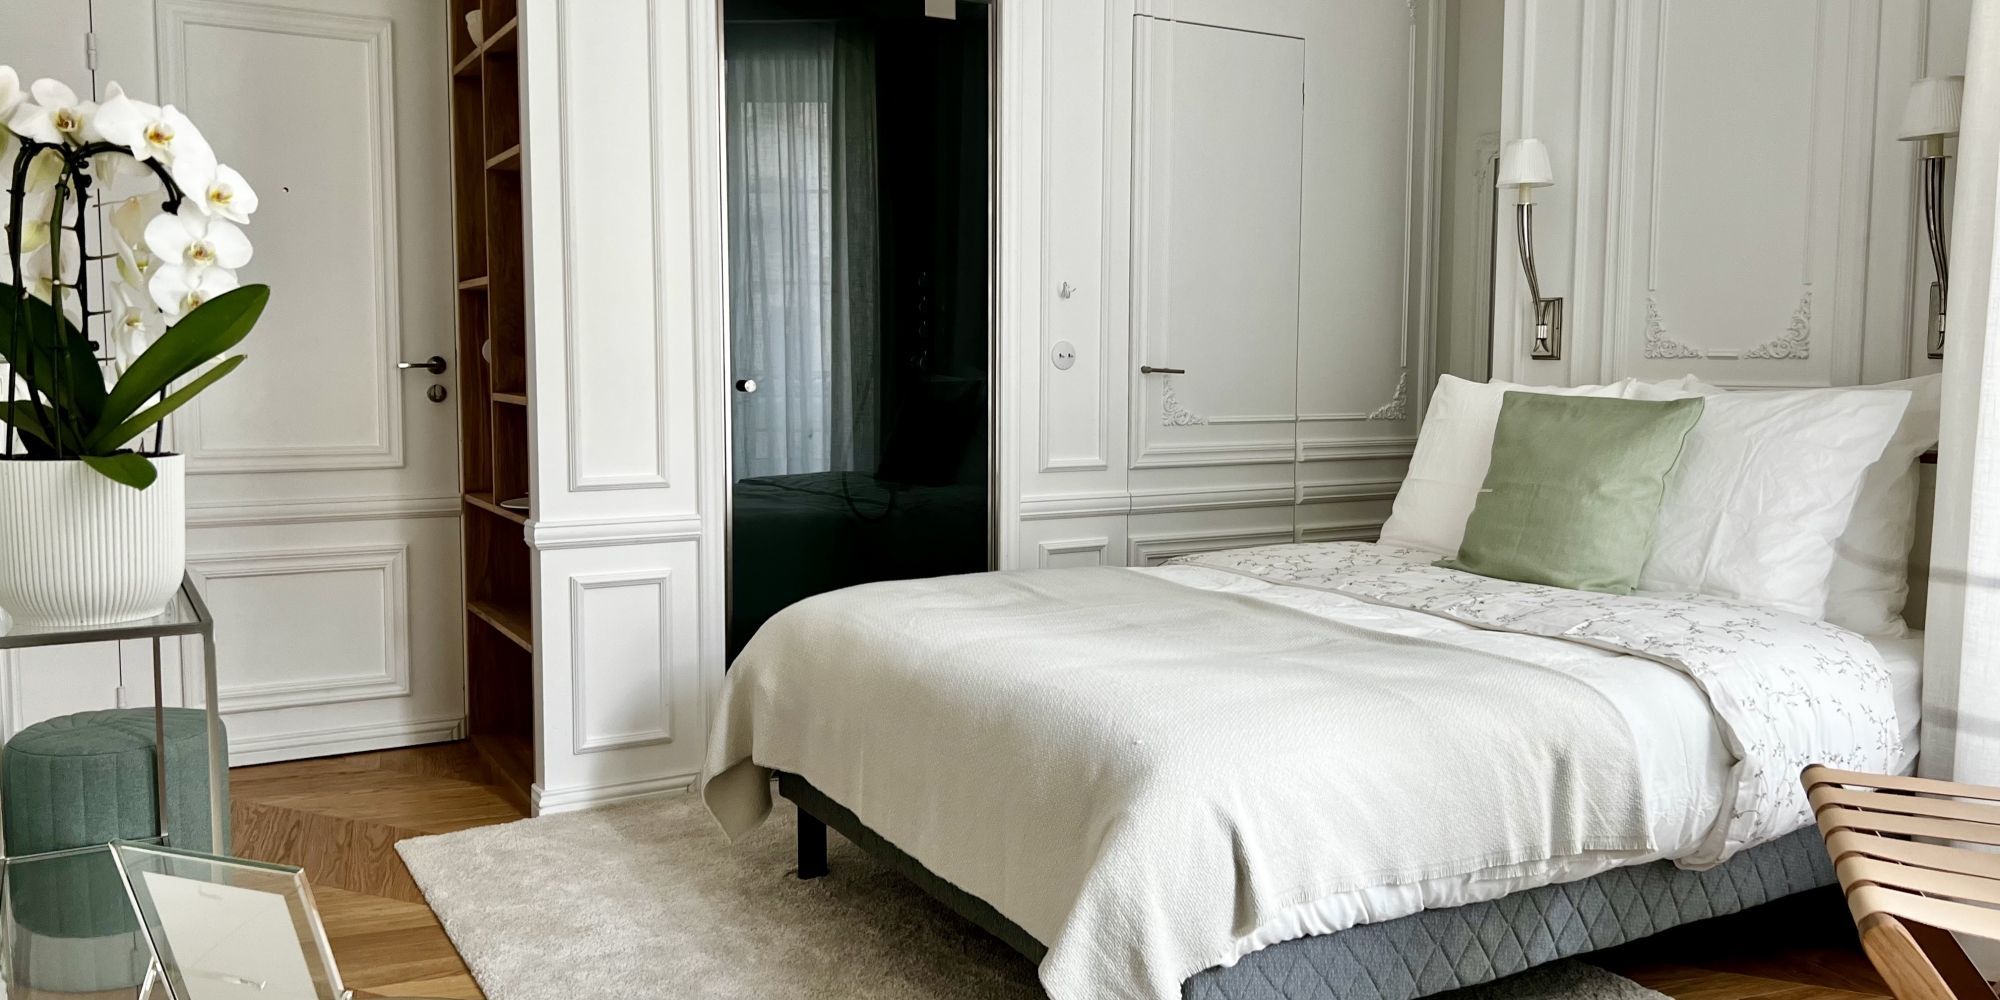 Dans l'intimité des hôtels particuliers parisiens - Challenges